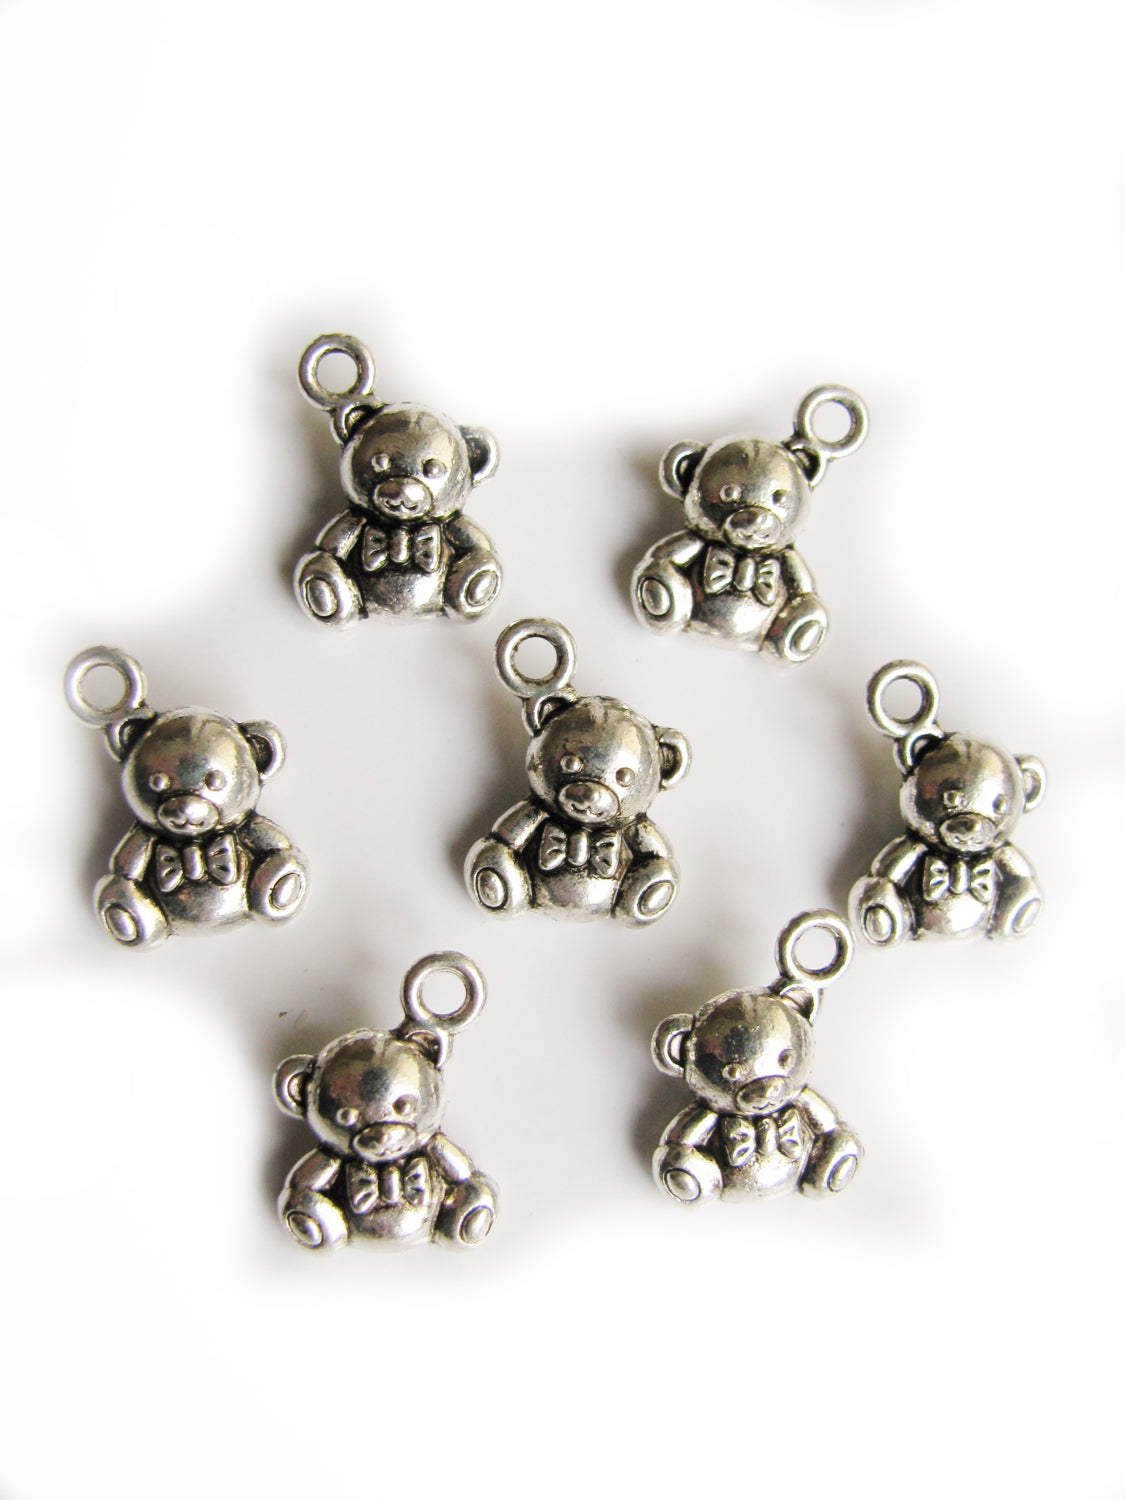 8 Metallanhänger Bär, Silberfarben, 1,5cm, für Charms, Bettelarmband, Anhänger,